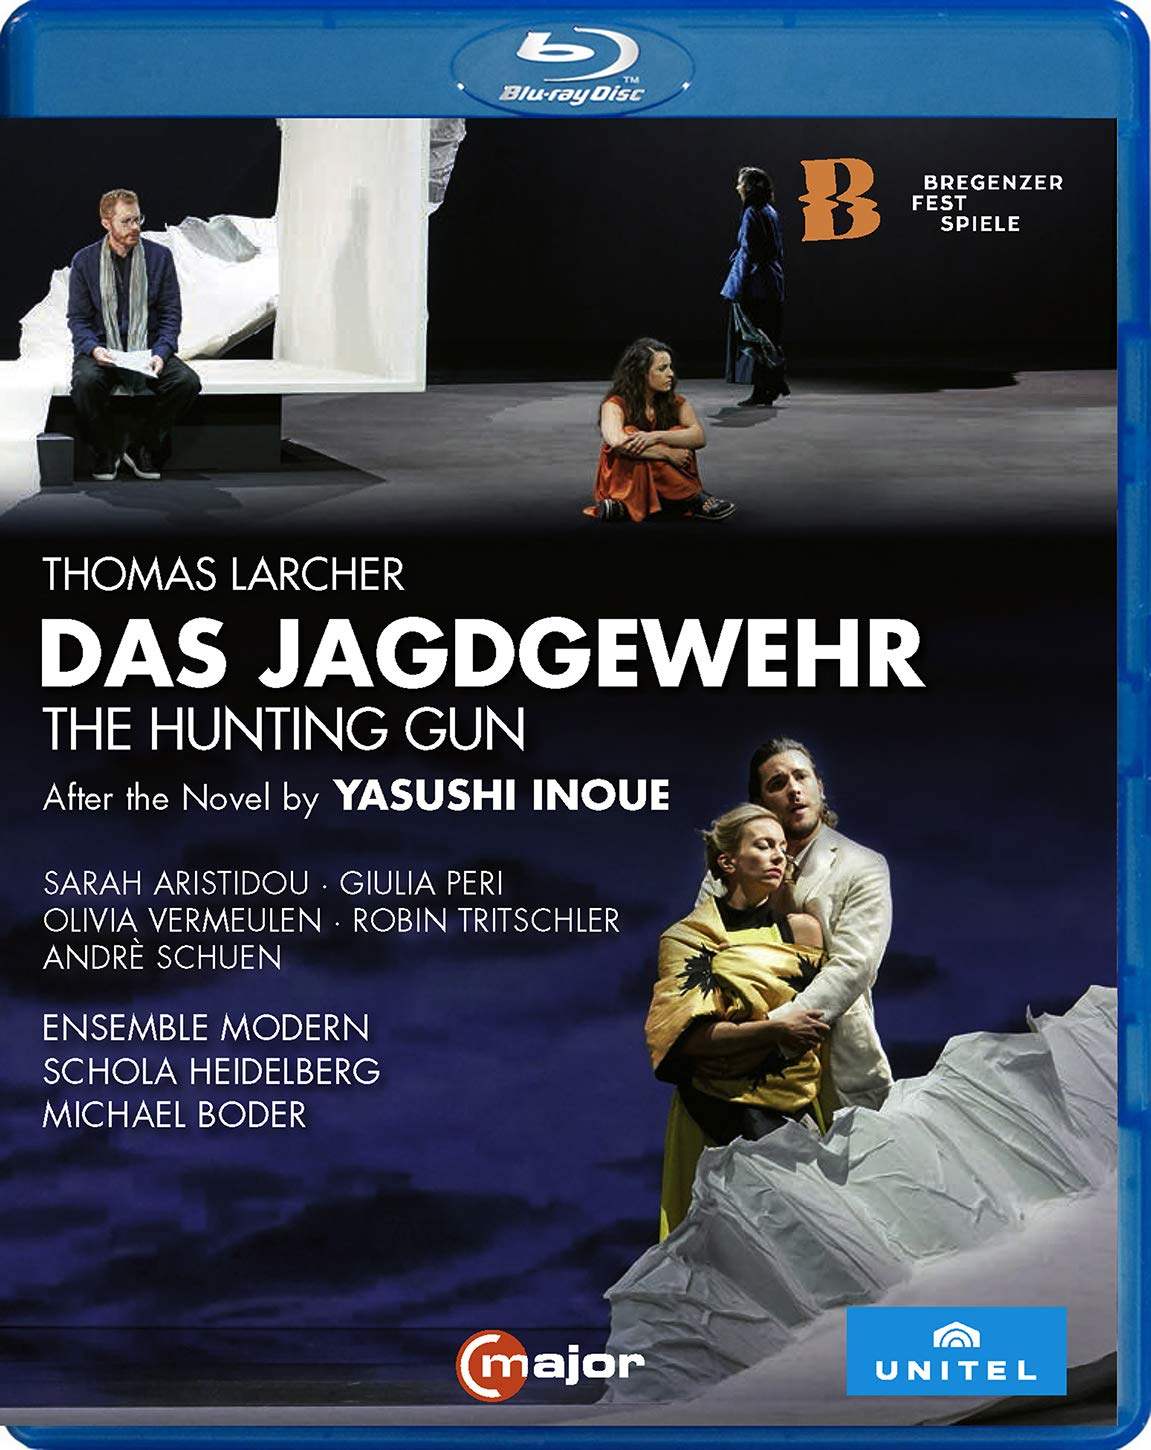 Music Blu-Ray Thomas Larcher - Das Jagdgewehr NUOVO SIGILLATO, EDIZIONE DEL 01/04/2020 SUBITO DISPONIBILE